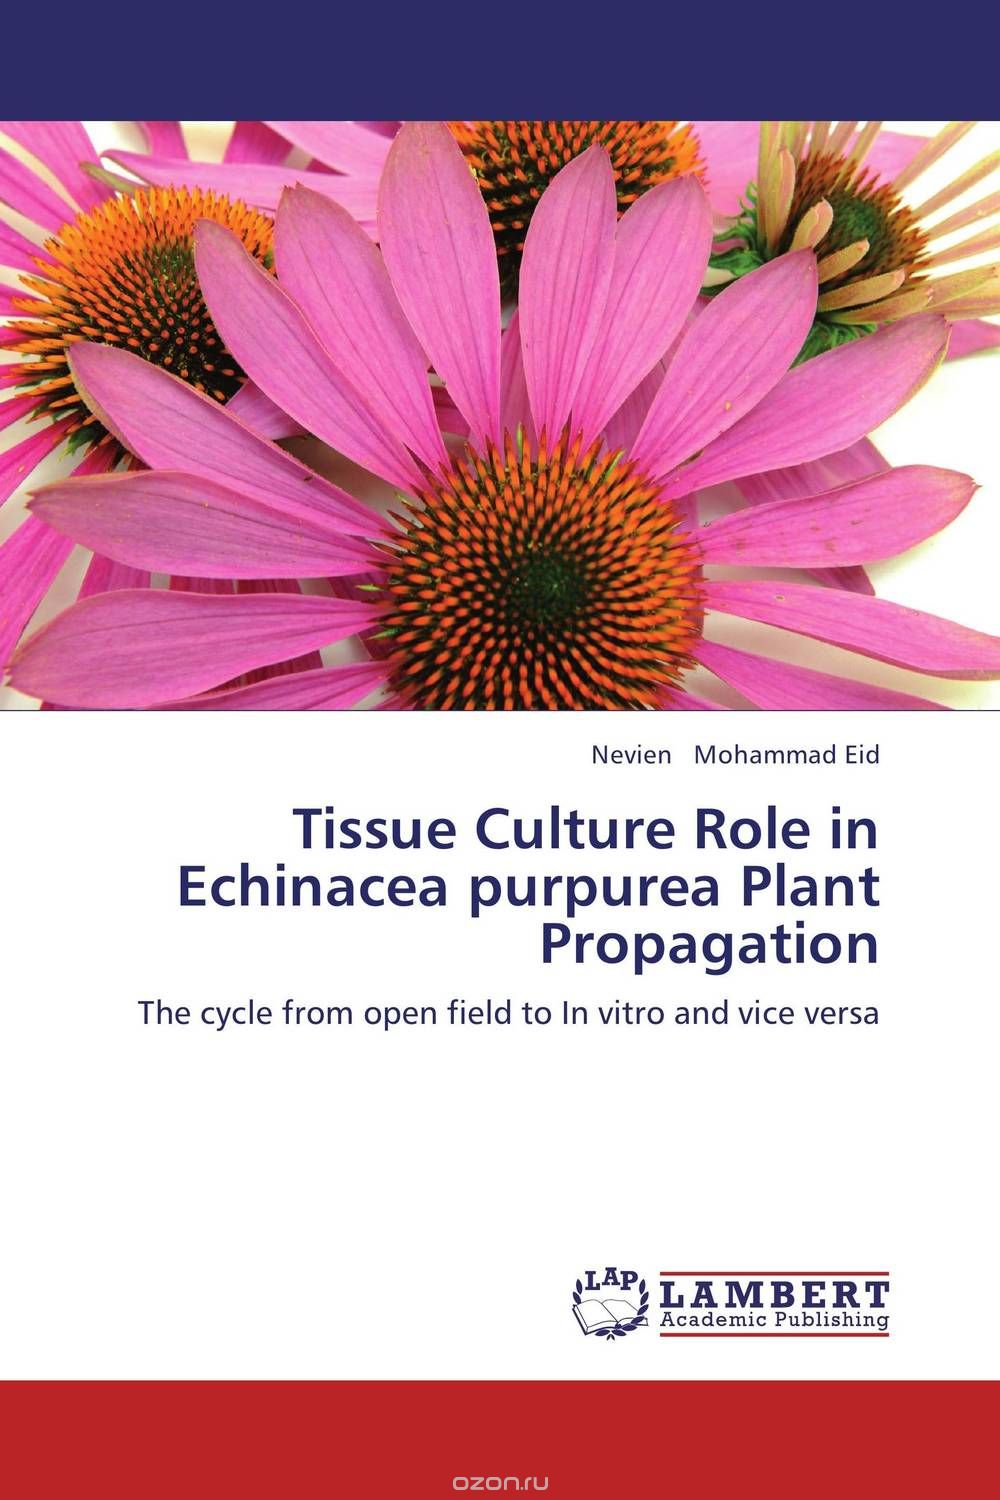 Tissue Culture Role in Echinacea purpurea Plant Propagation